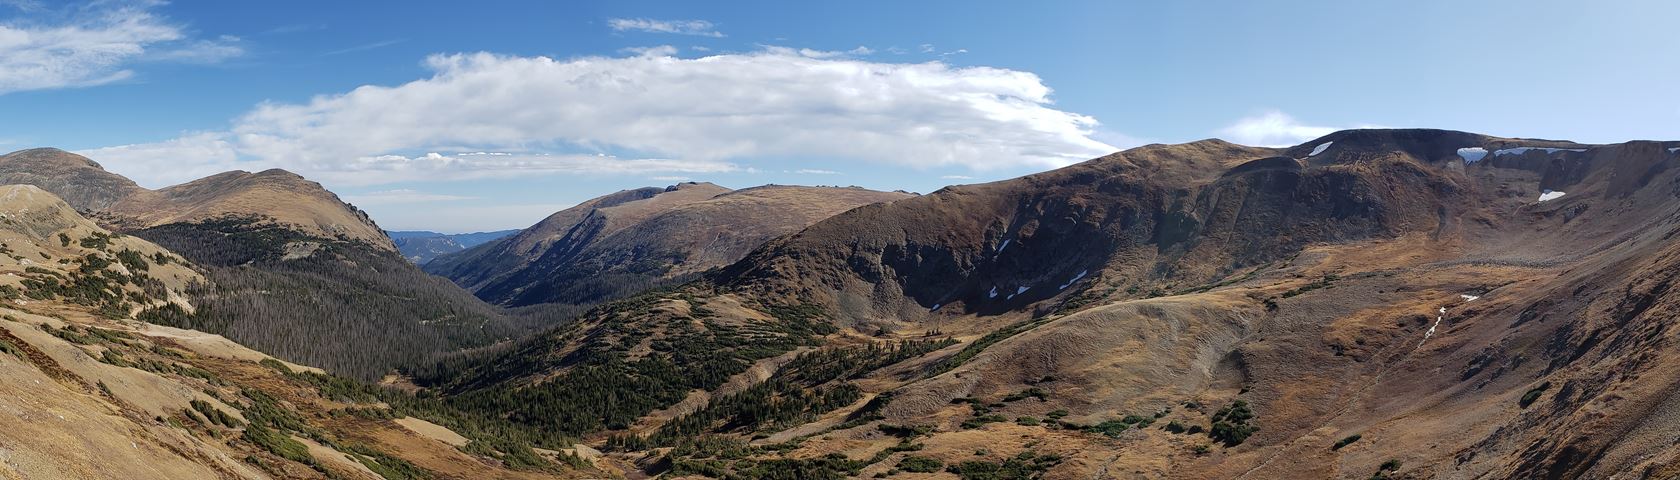 Alpine Visitor Center Overlook